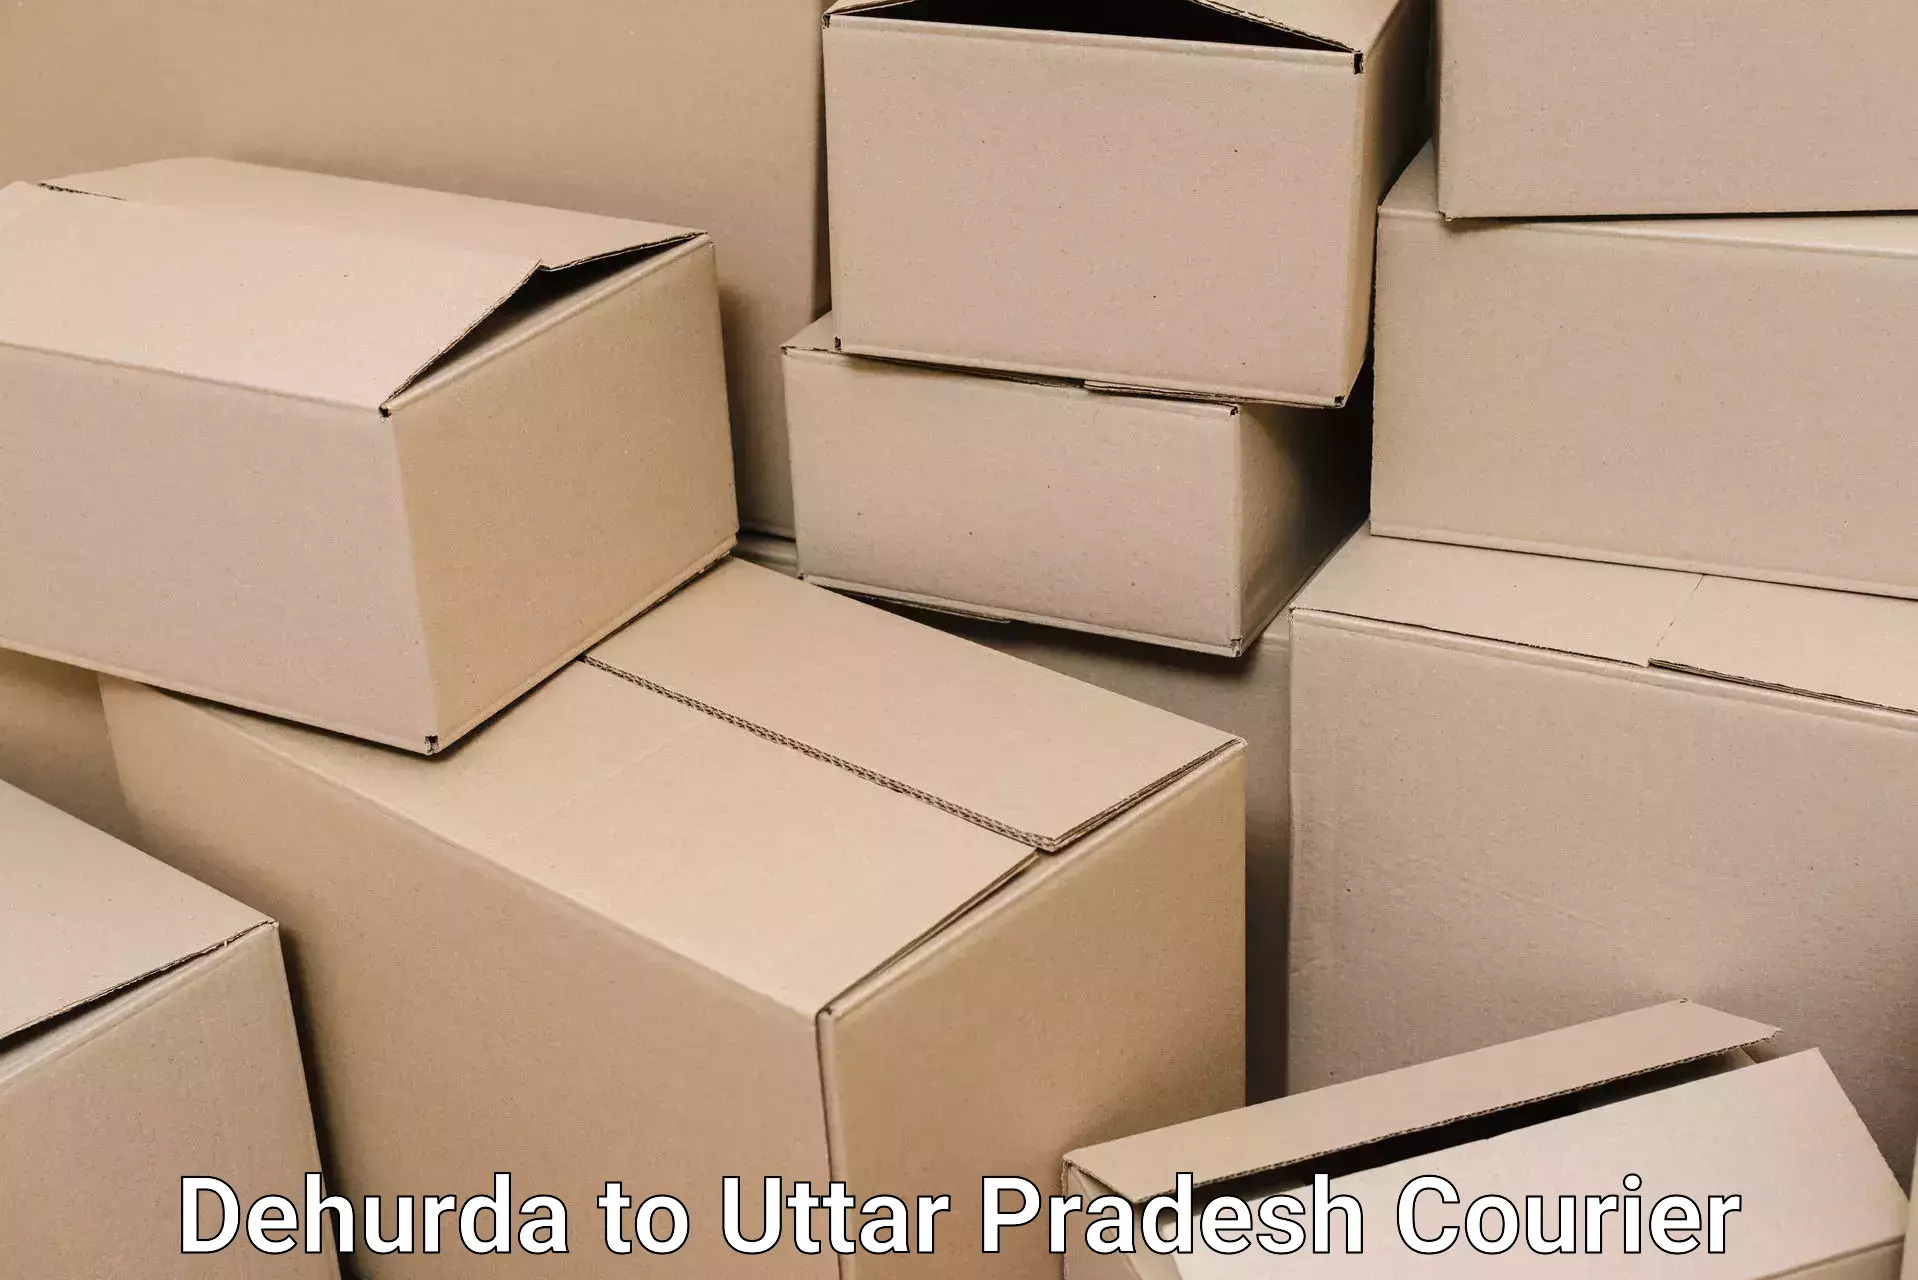 Furniture moving plans Dehurda to Auraiya